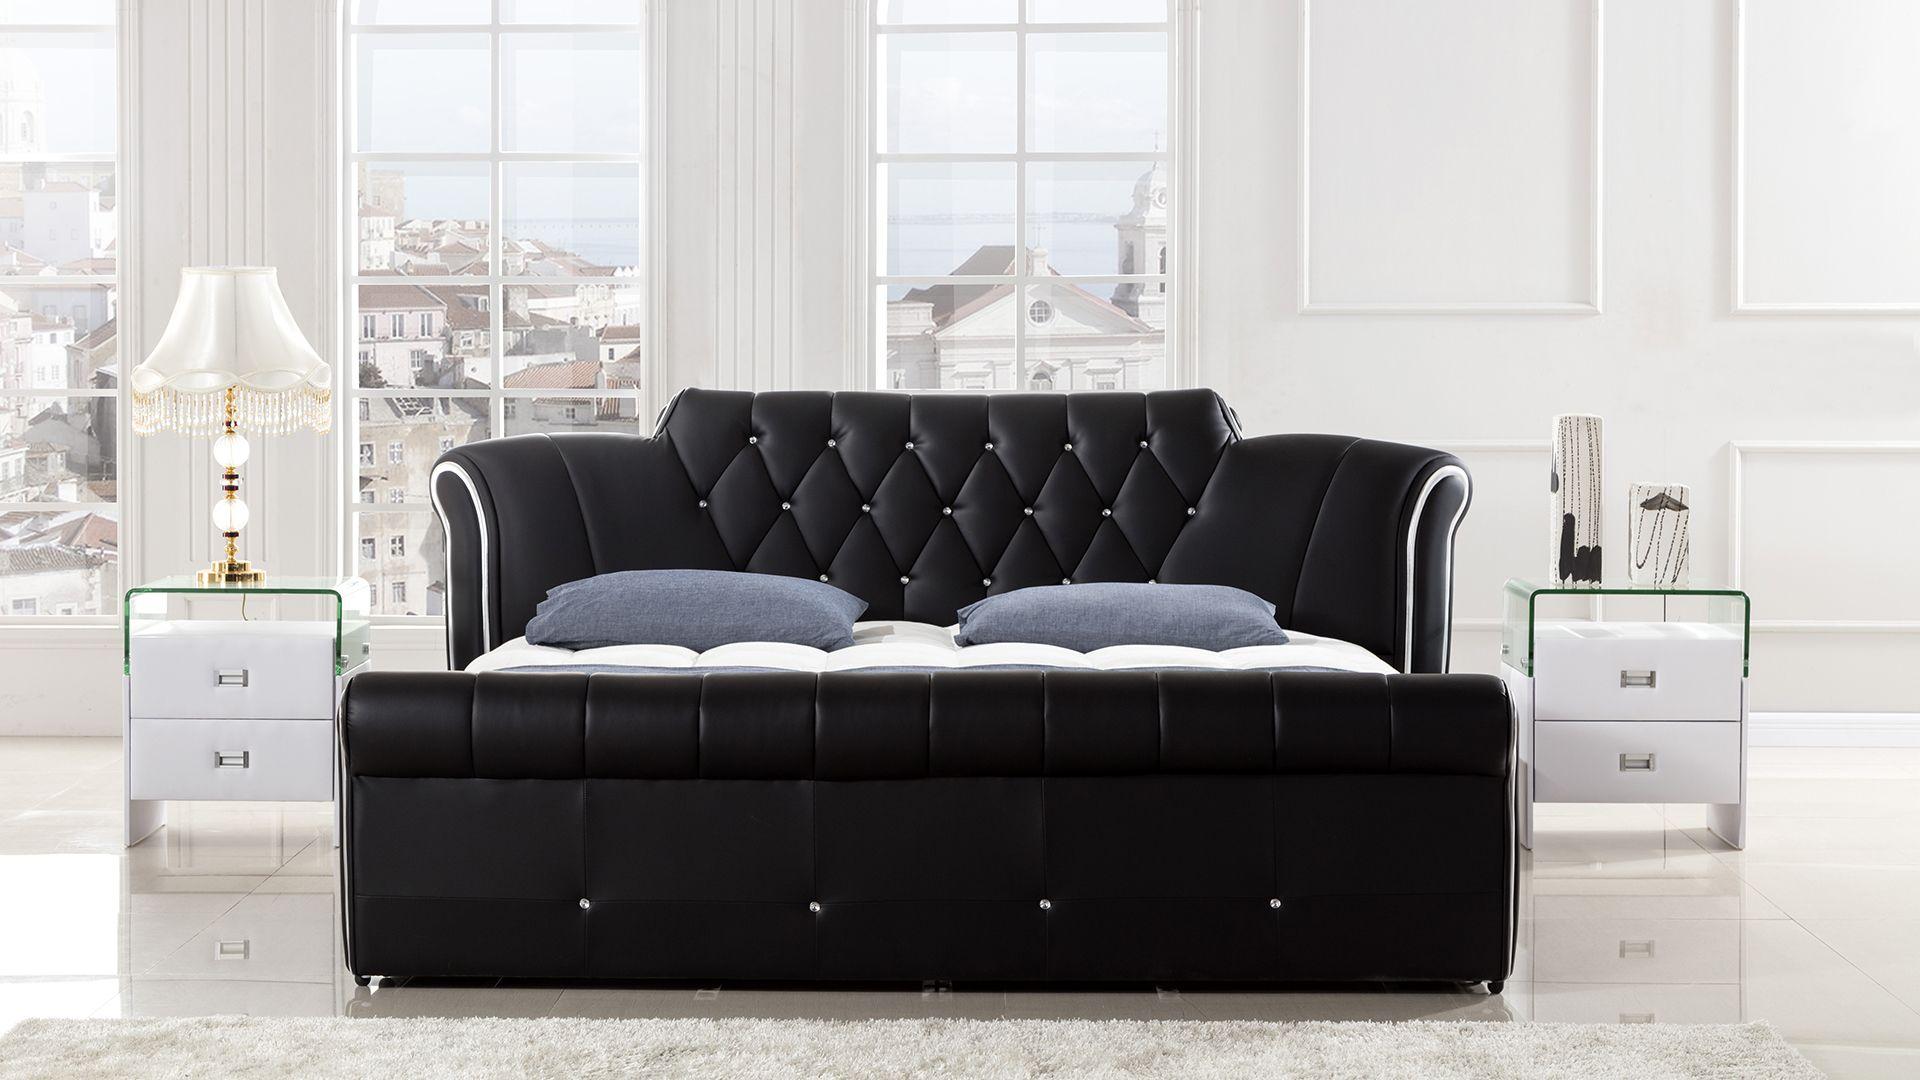 

    
American Eagle Furniture B-D032-BK-CK Platform Bed Black B-D032-BK-CK
